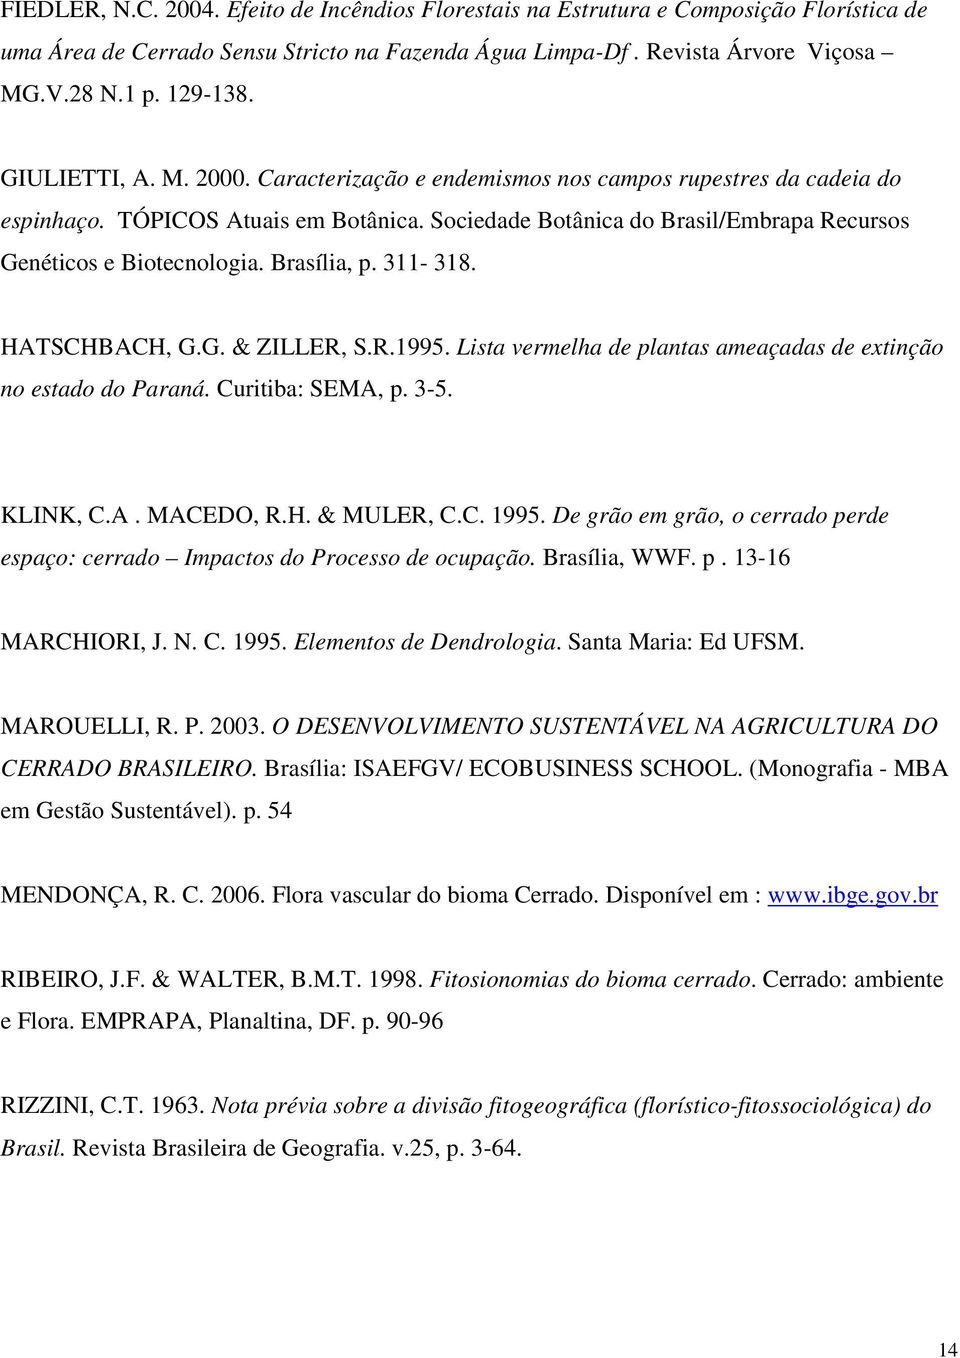 Brasília, p. 311-318. HATSCHBACH, G.G. & ZILLER, S.R.1995. Lista vermelha de plantas ameaçadas de extinção no estado do Paraná. Curitiba: SEMA, p. 3-5. KLINK, C.A. MACEDO, R.H. & MULER, C.C. 1995.